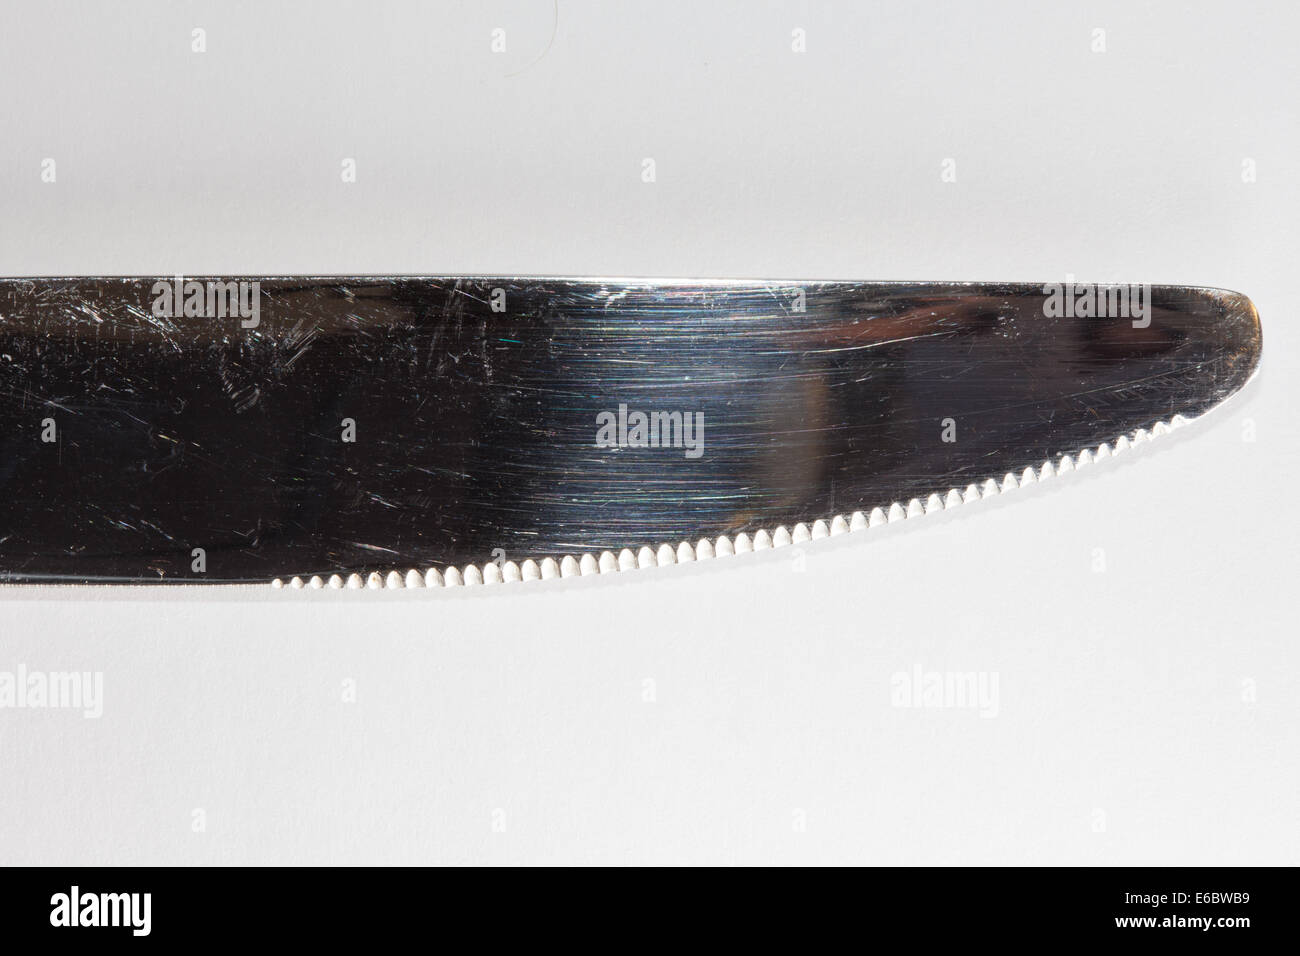 Bordo dentato di un acciaio inox coltello cena Foto Stock